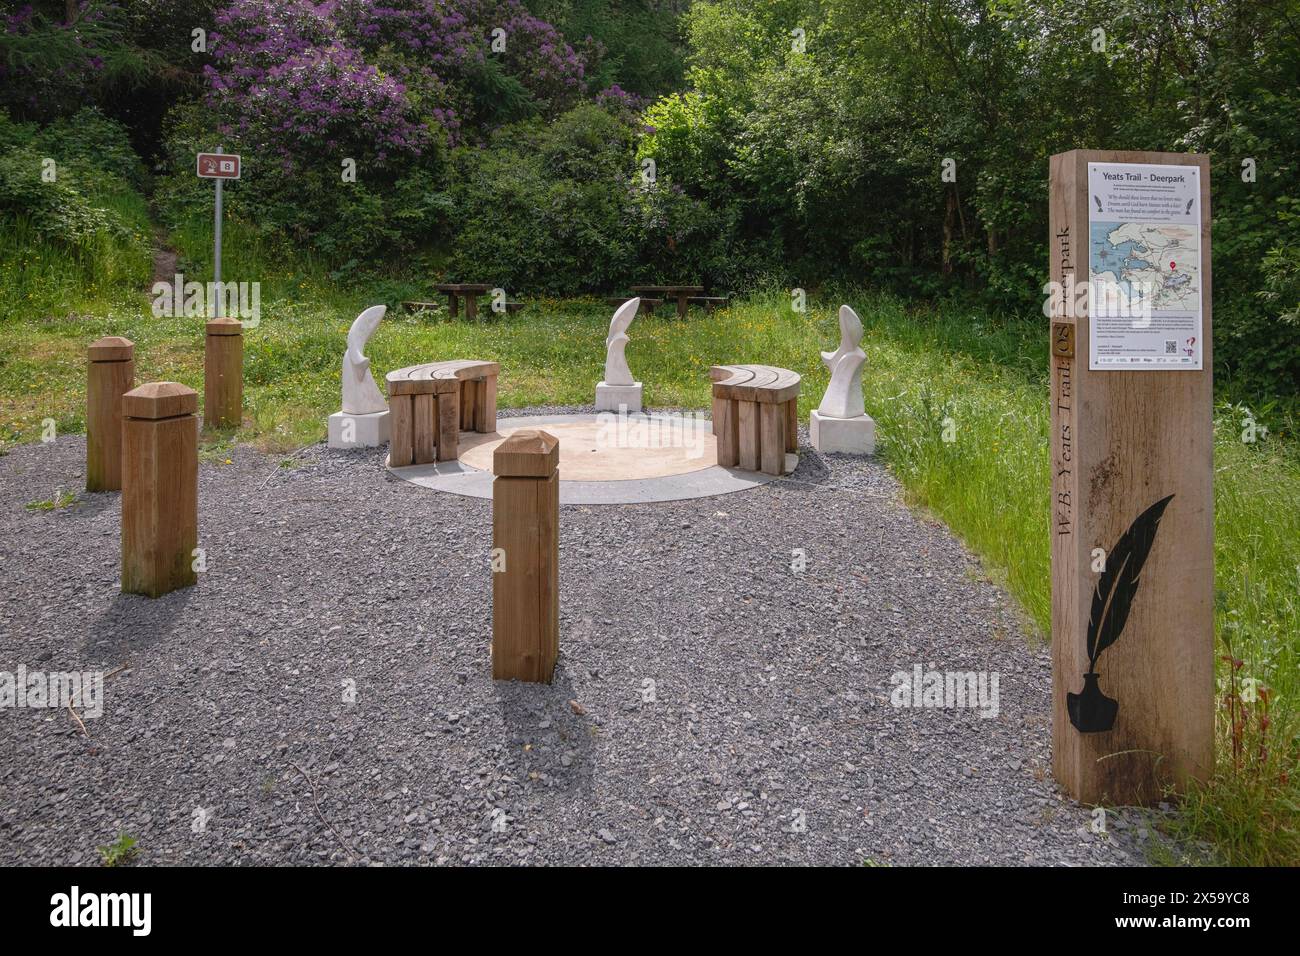 Repubblica d'Irlanda, Contea di Sligo, Yeats Trail, un percorso turistico segnalato con 14 località nella Contea di Sligo che hanno strette associazioni con il poeta WB Yeats, Yeats Trail numero 8 a Deerpark, questa installazione è stata creata dall'artista locale barra Cassidy presso il sito neolitico. Foto Stock